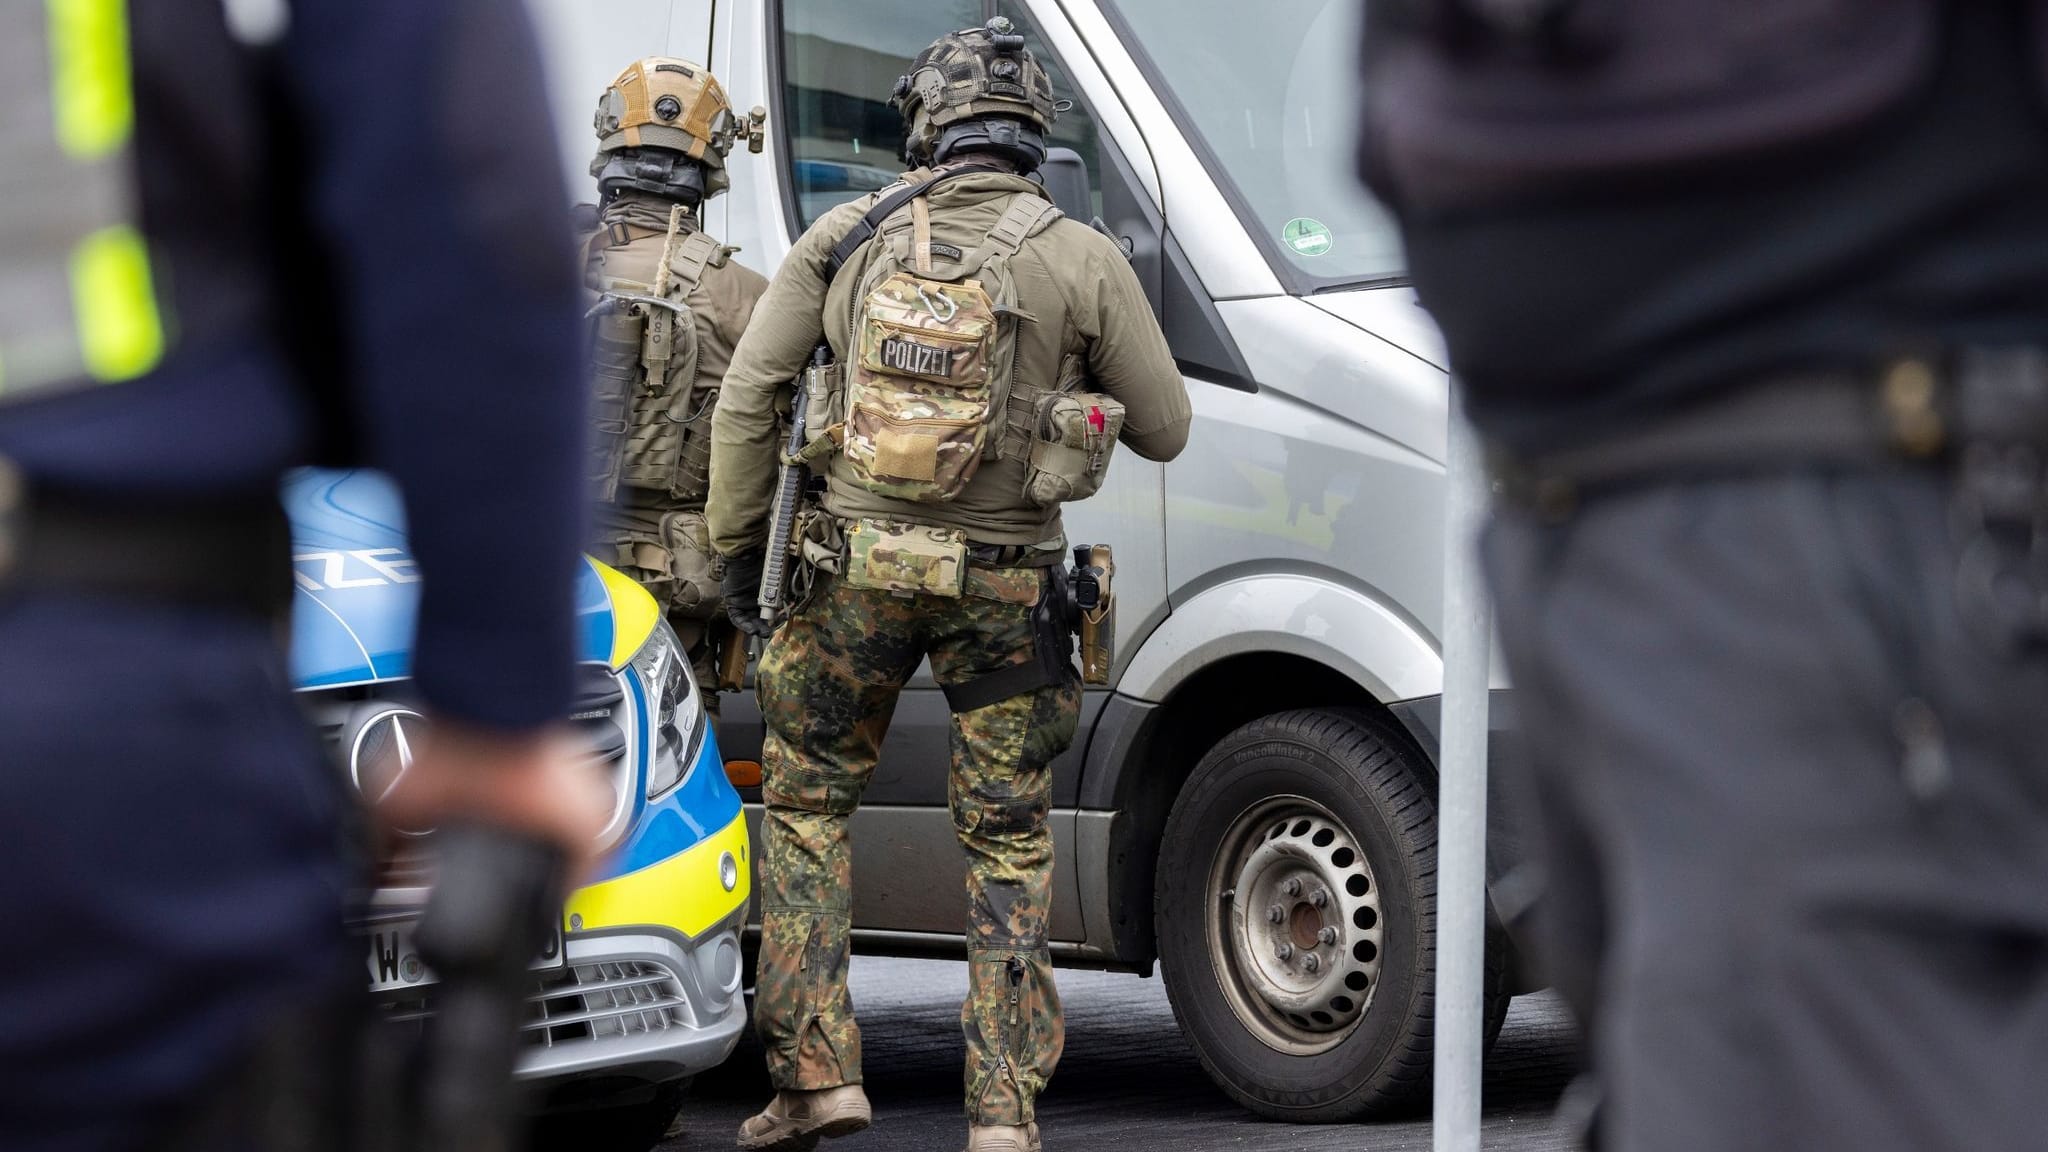 Dortmund-Hörde: SEK-Einsatz – 18-Jähriger nach mehreren Schüssen verhaftet